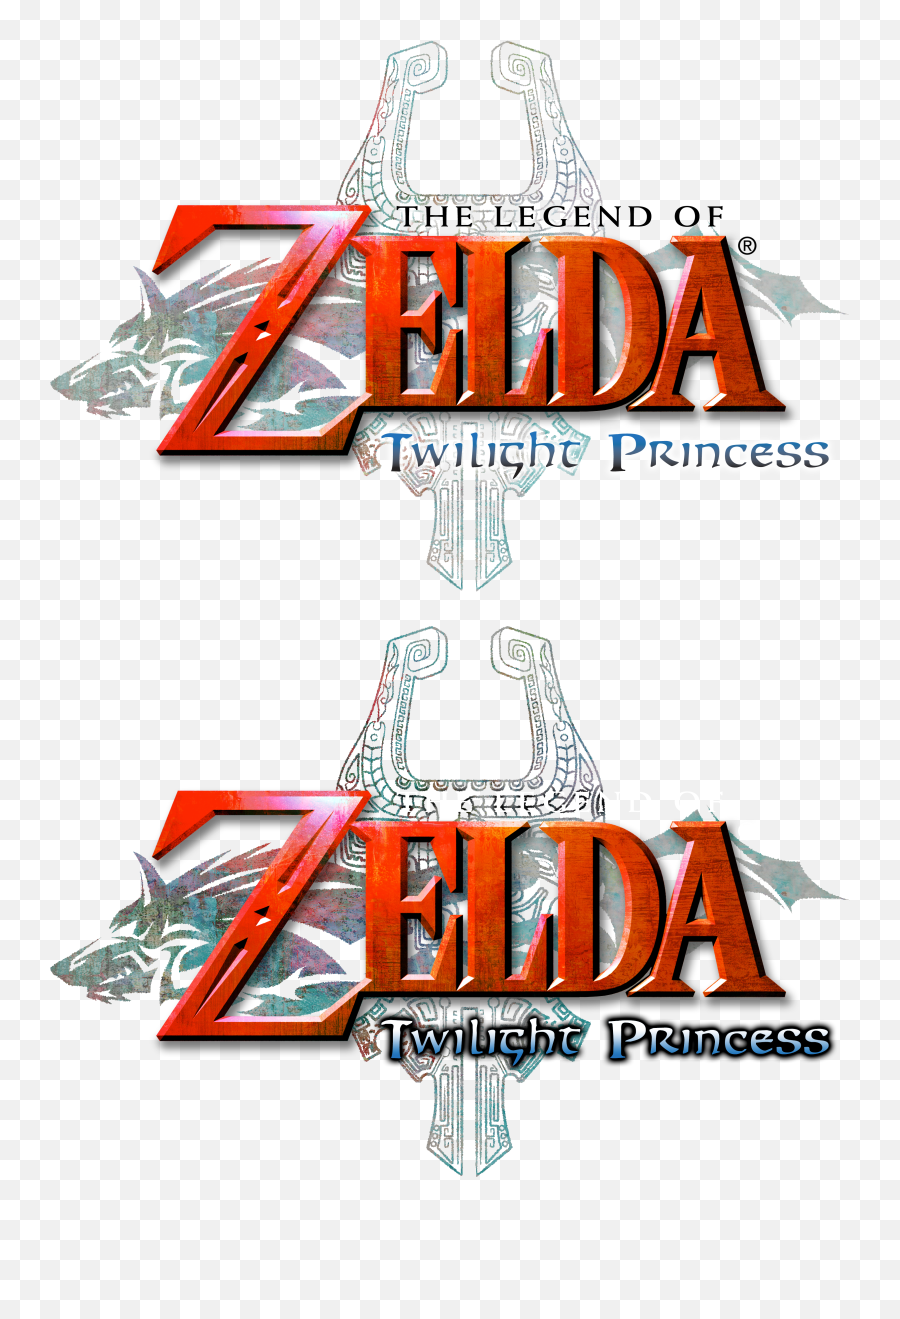 Twilight Princess - Poster Png,Legend Of Zelda Logo Png